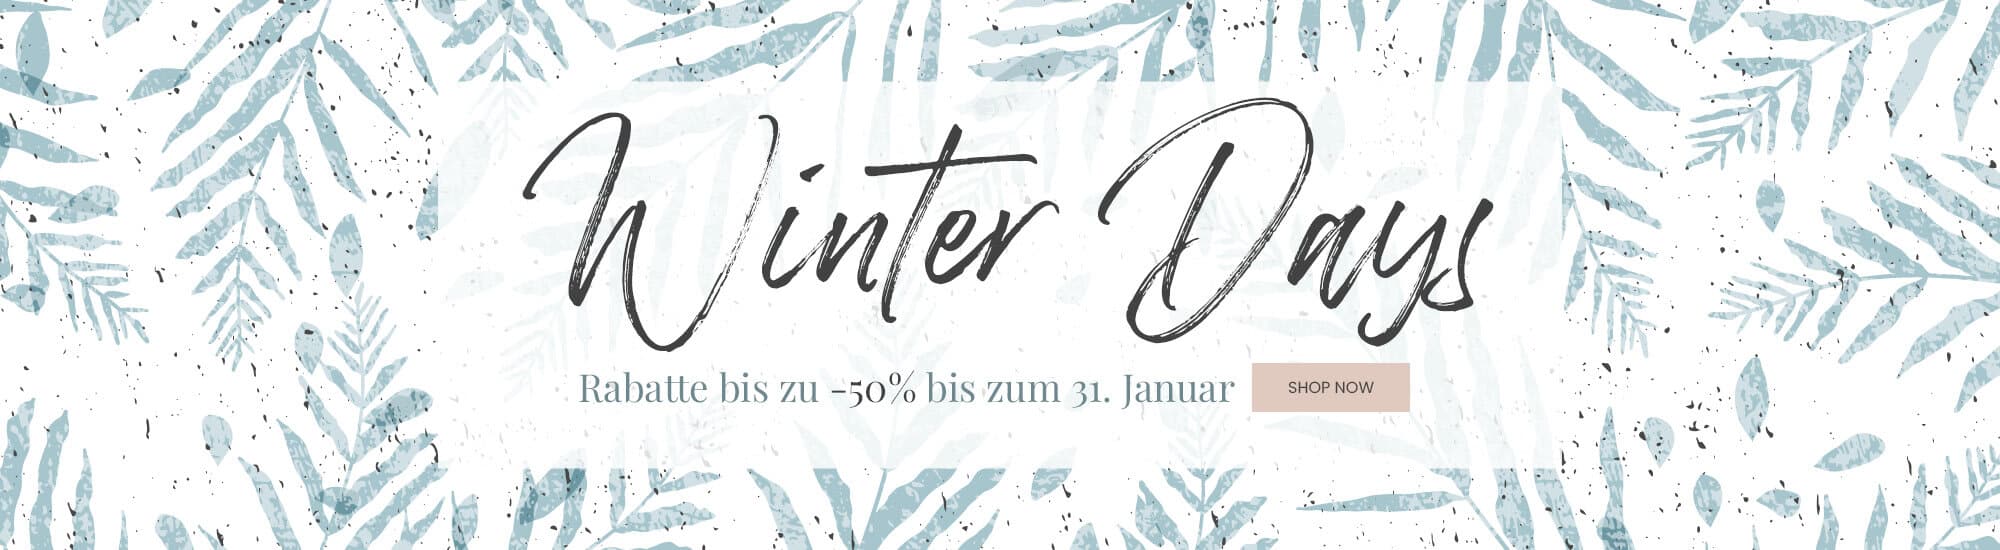 Winter Days | Winterschlussverkauf